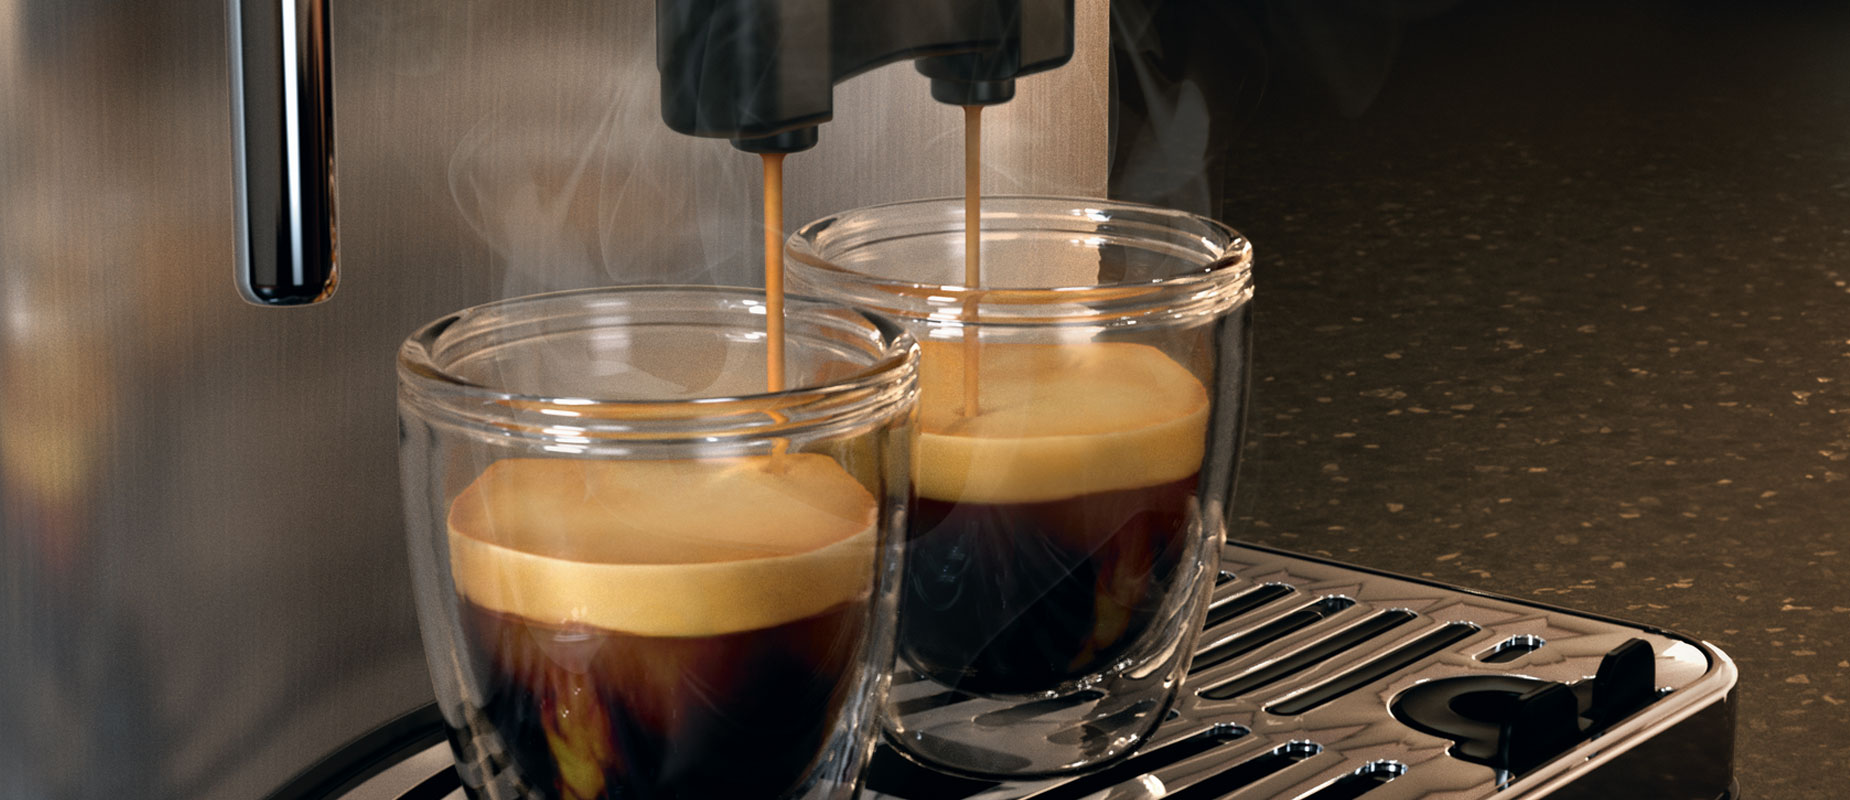 máy pha cafe cappuccino tự động